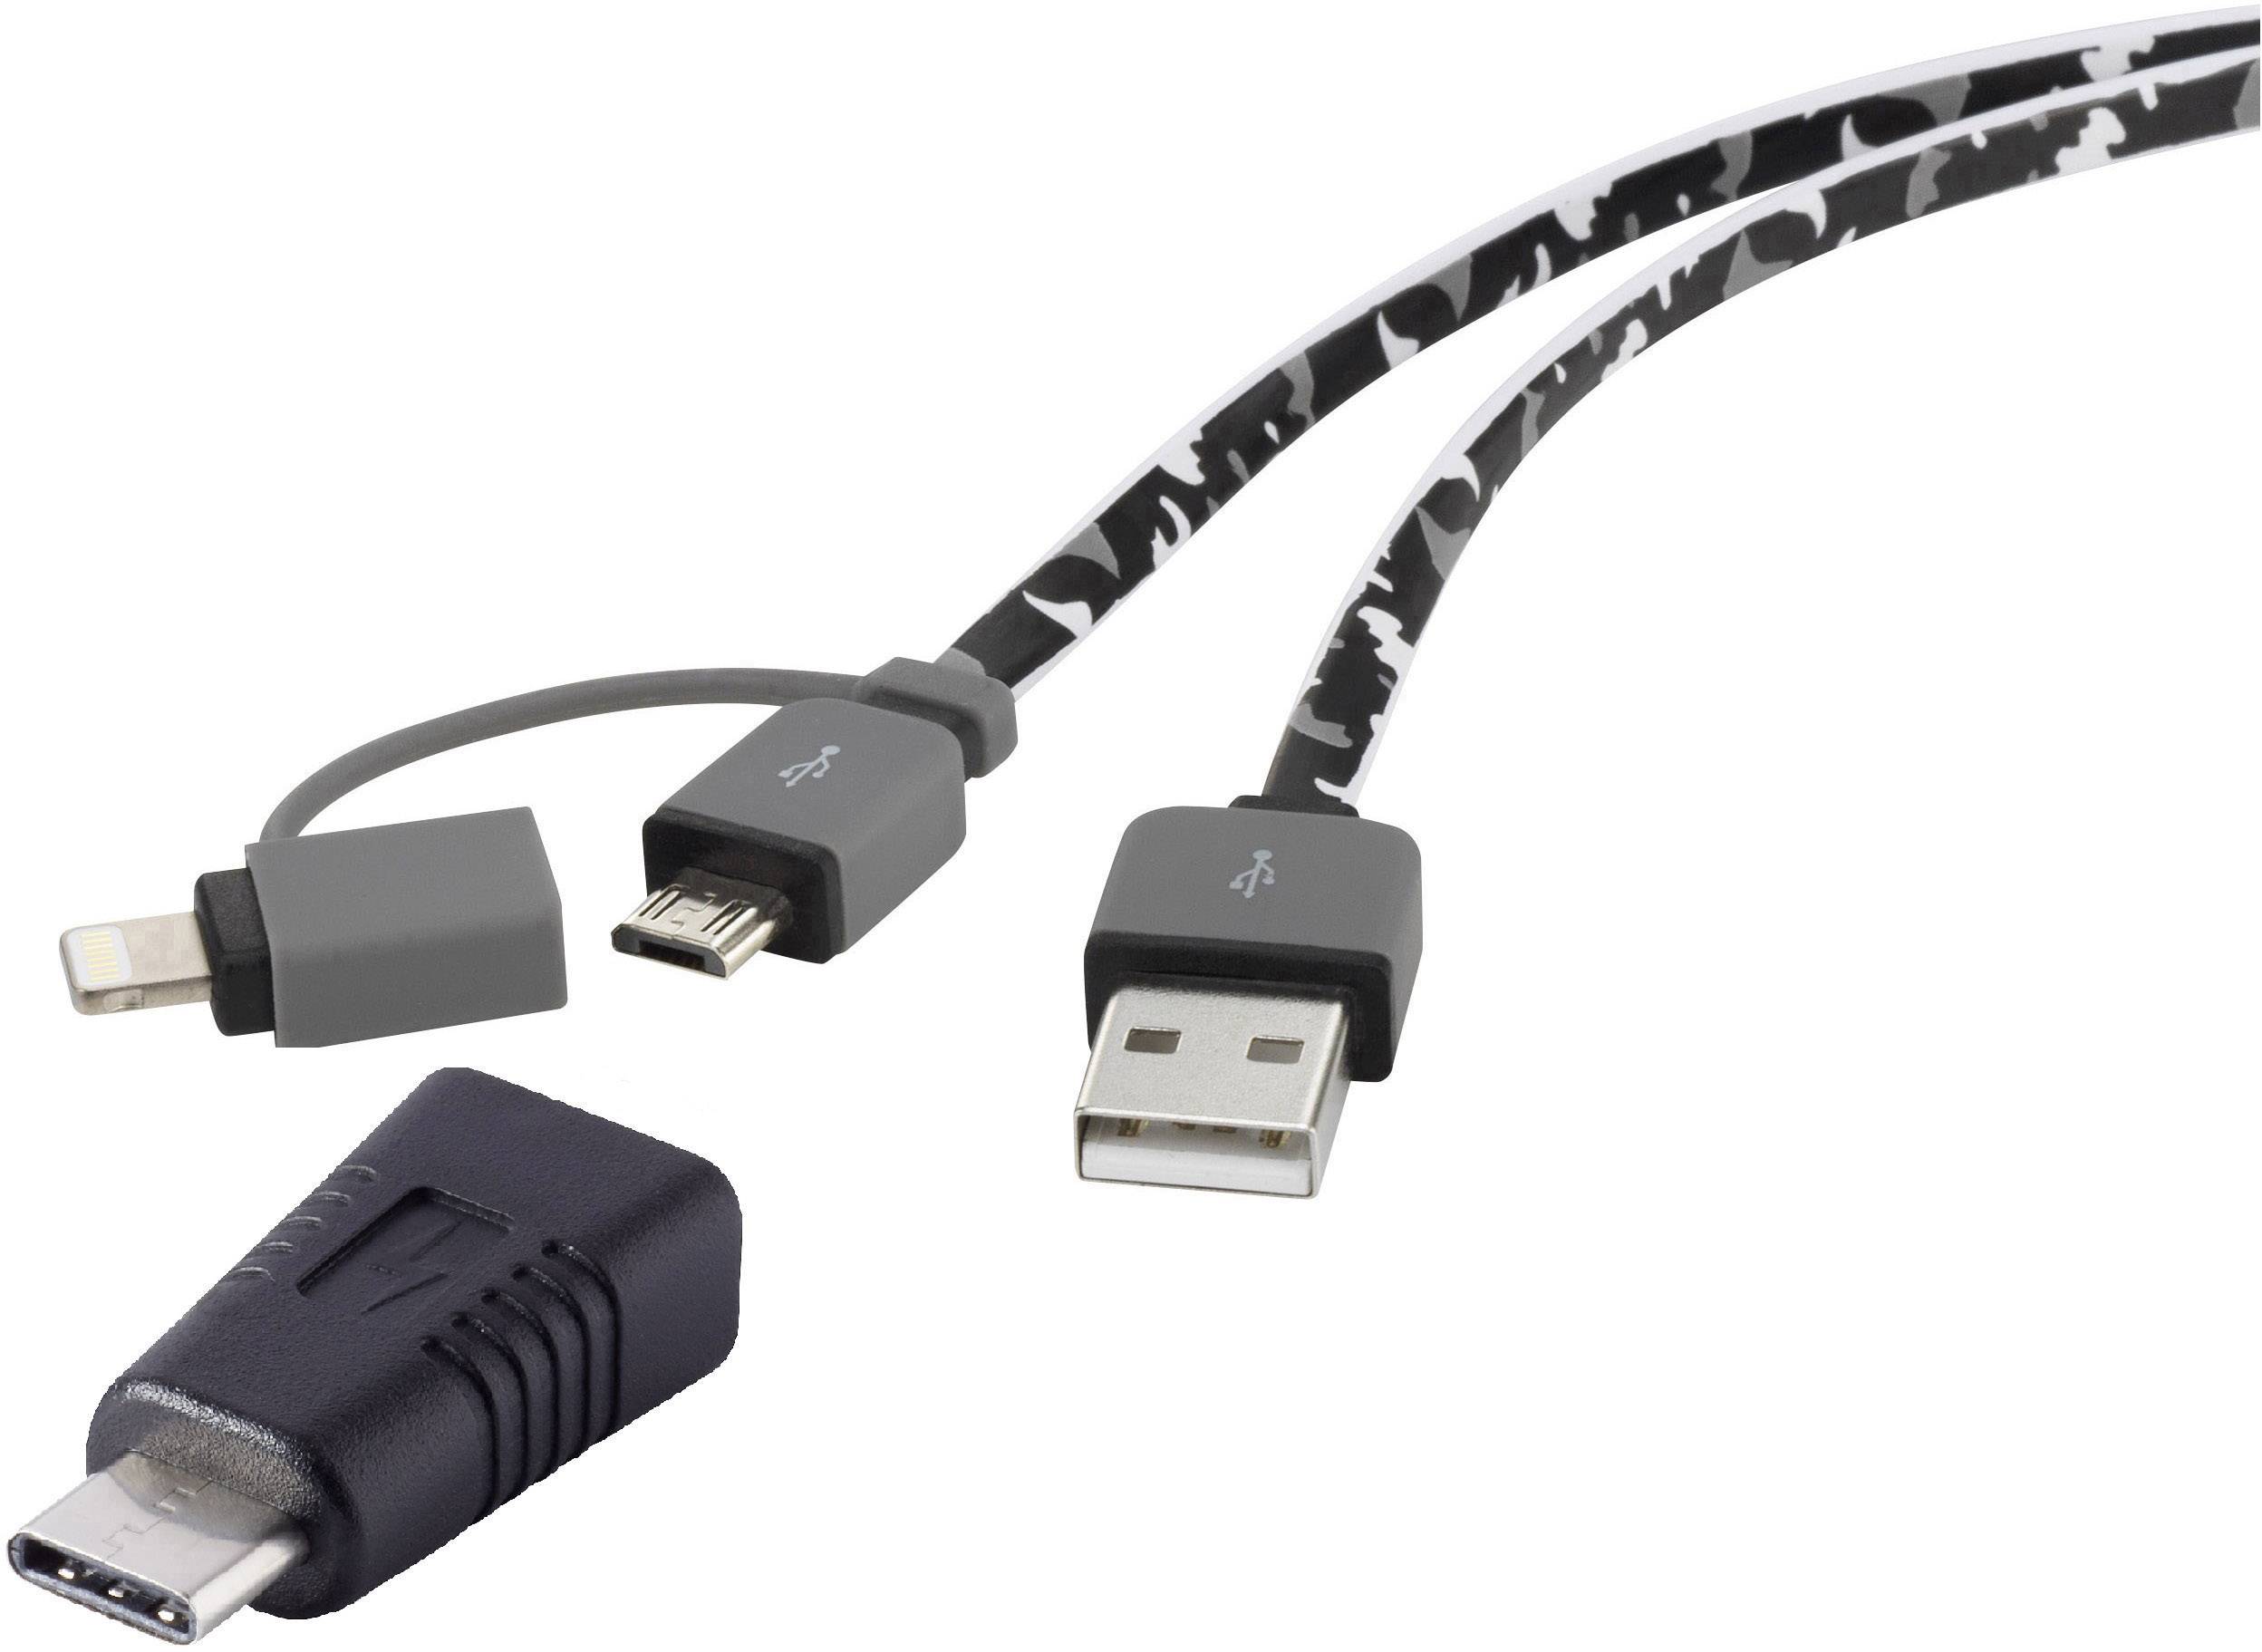 CONRAD Renkforce USB 2.0 Anschlusskabel [1x USB 2.0 Stecker A - 1x USB 2.0 Stecker Micro-B, USB-C? S